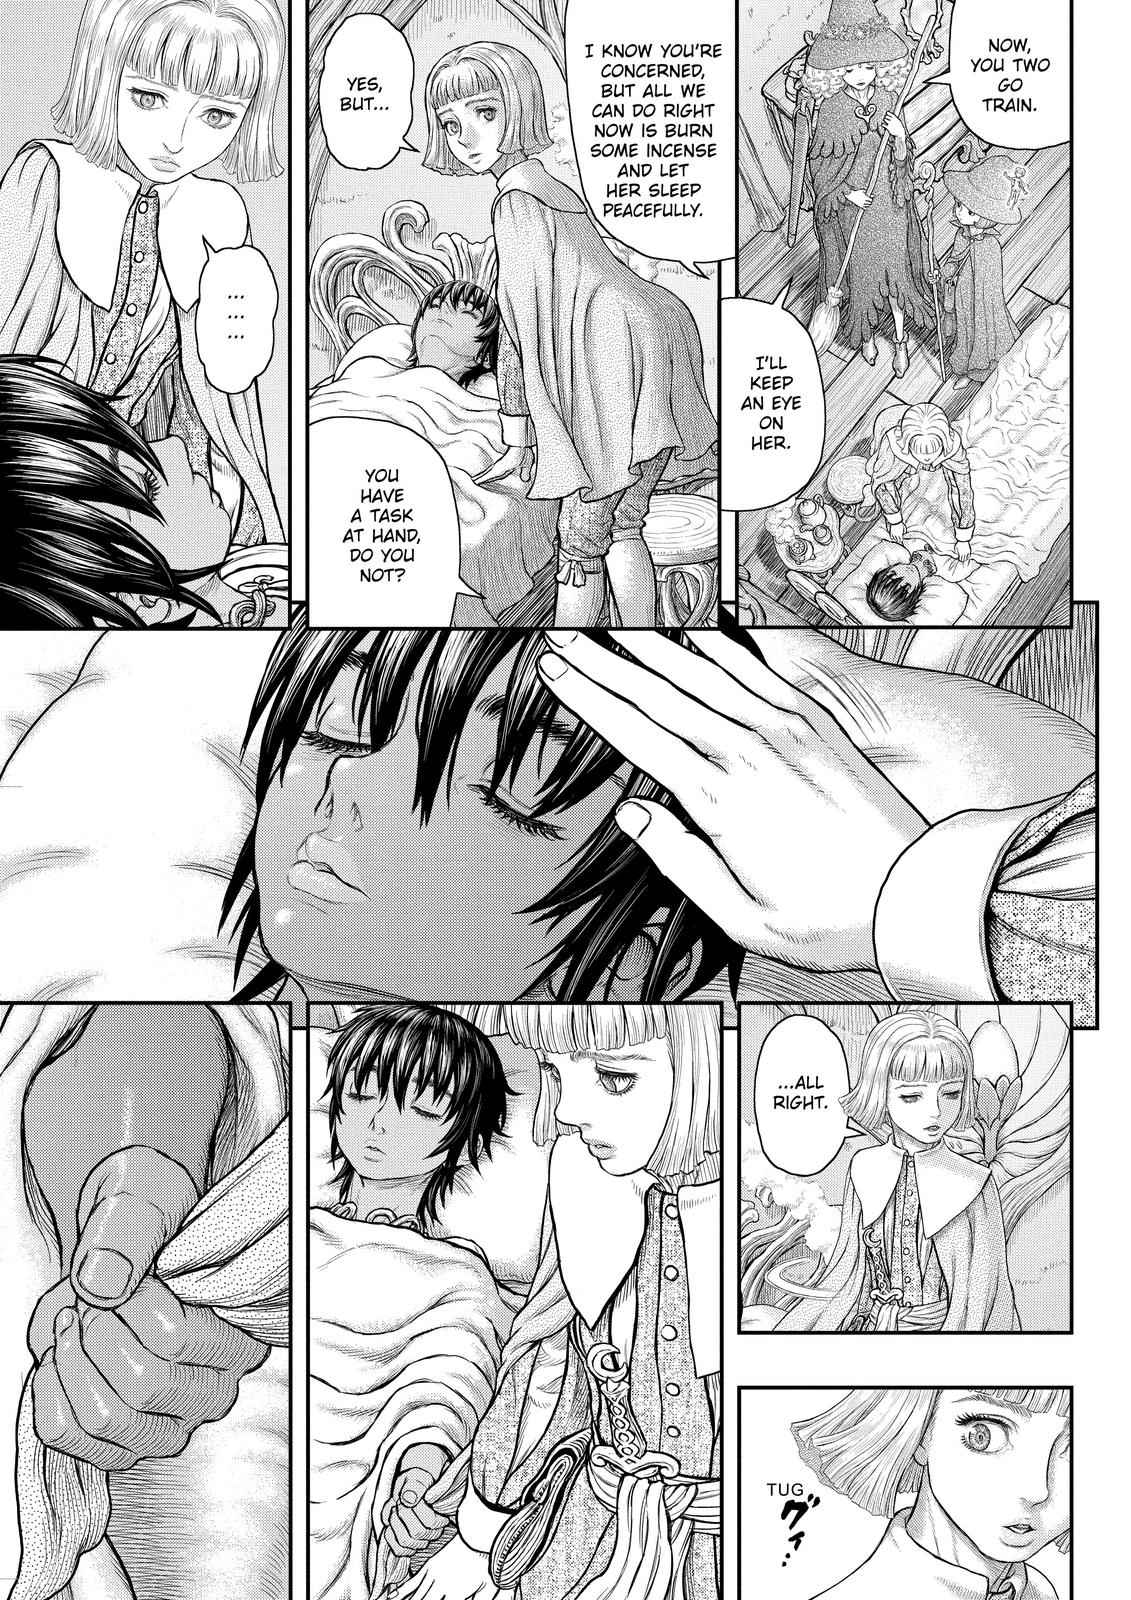 Berserk Manga Chapter 360 image 03